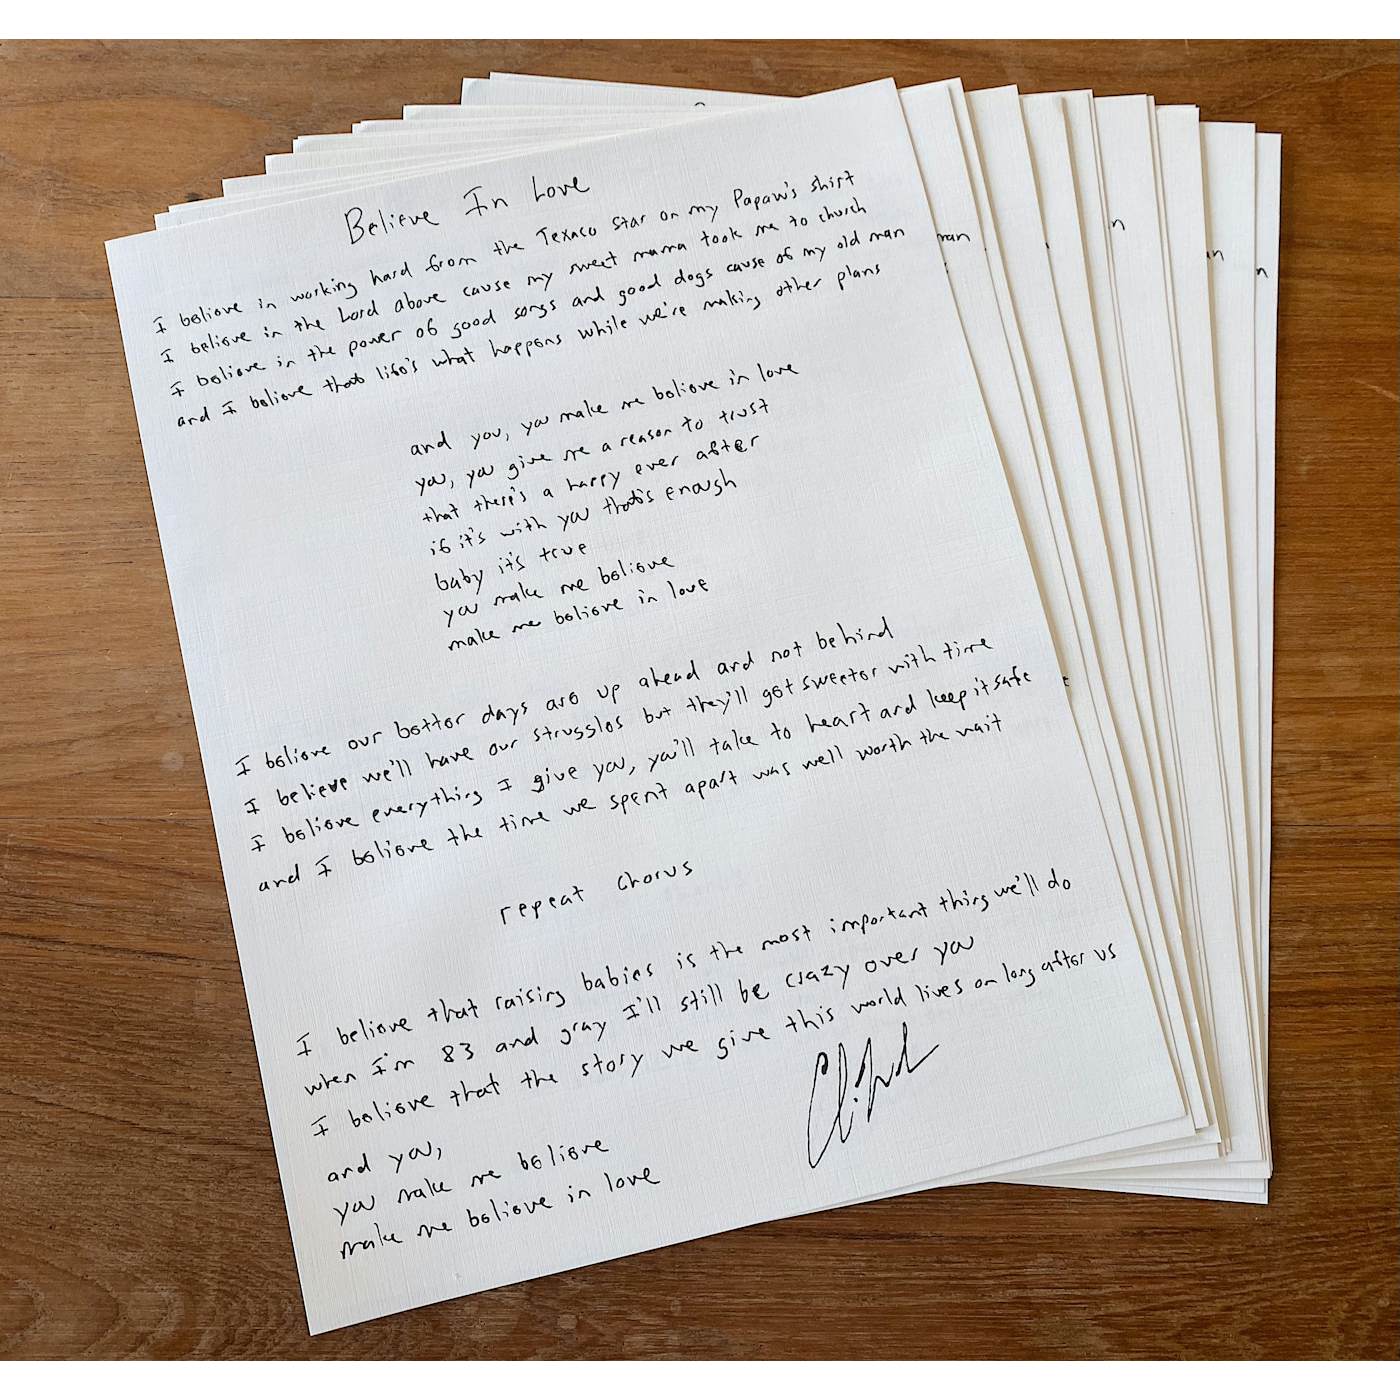 Charlie Worsham "Believe in Love" Handwritten Lyric Sheet